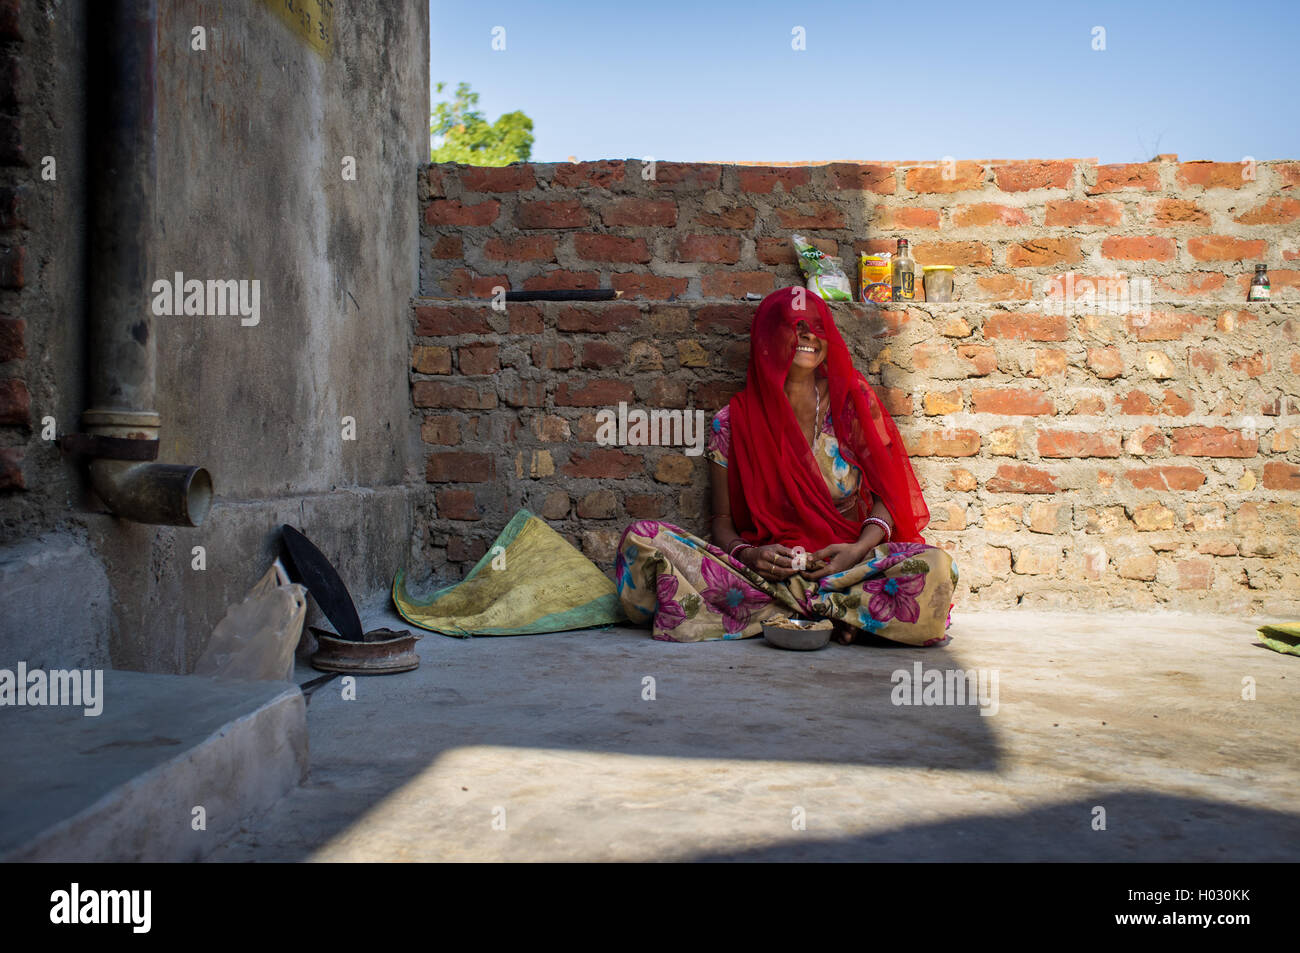 Région GODWAR, INDE - 13 février 2015 : femme indienne en sari est assis et rit en mangeant chapati pour le petit-déjeuner. Banque D'Images